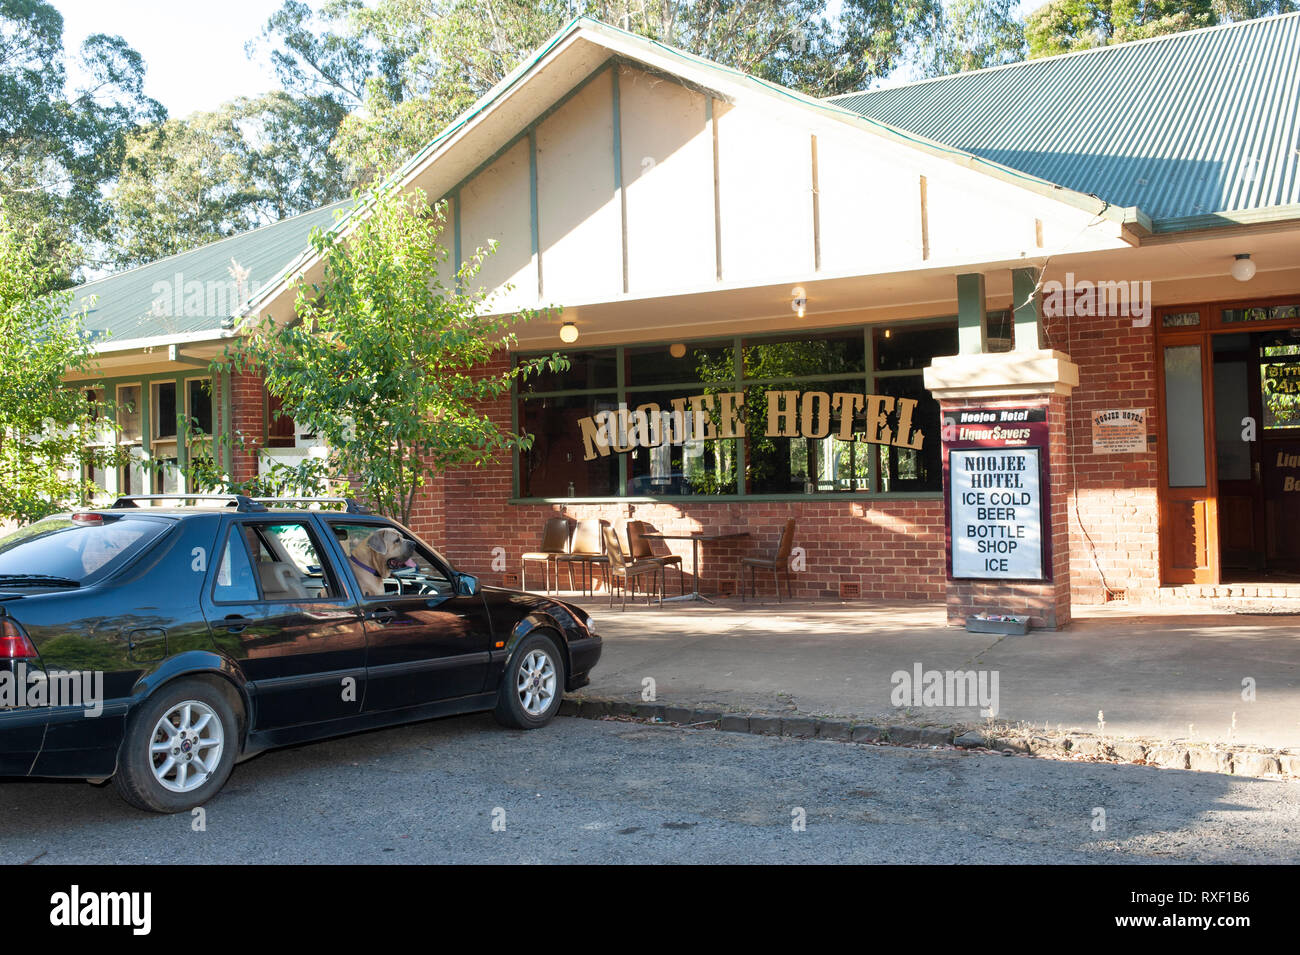 Cane nel sedile anteriore di una vettura in attesa per il suo proprietario che è nel pub. Noojee Hotel Victoria, Australia Foto Stock